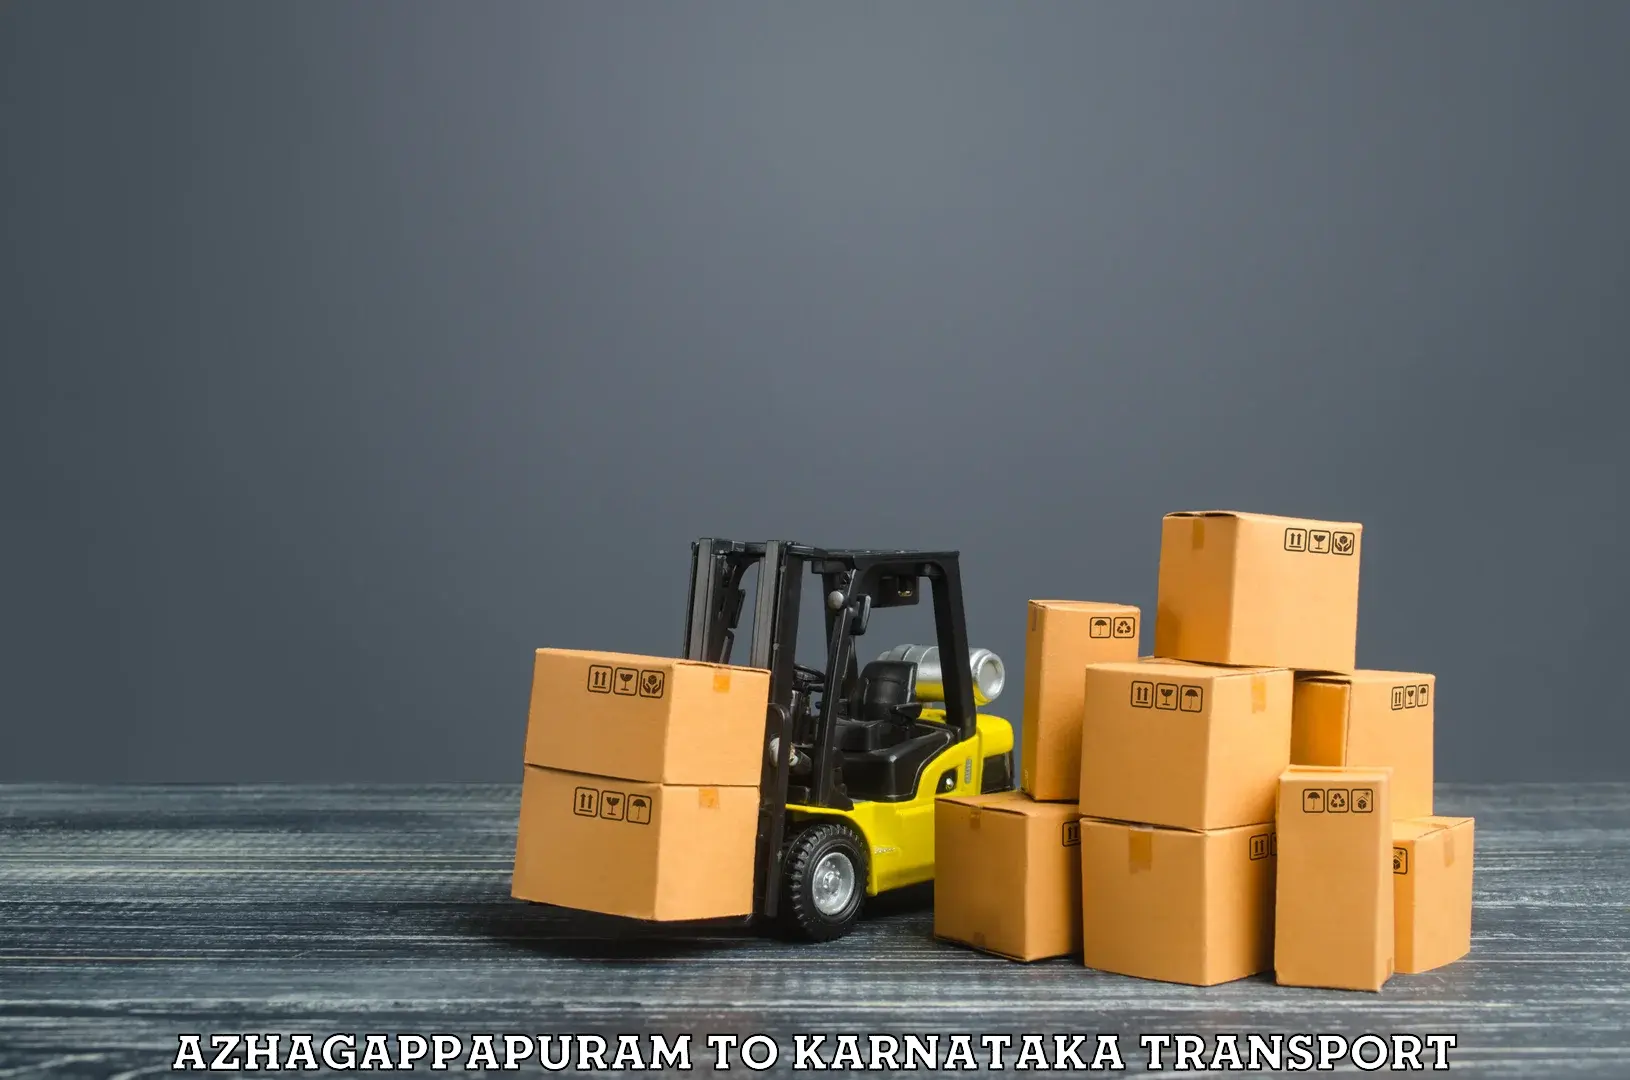 Cargo transport services Azhagappapuram to Sullia